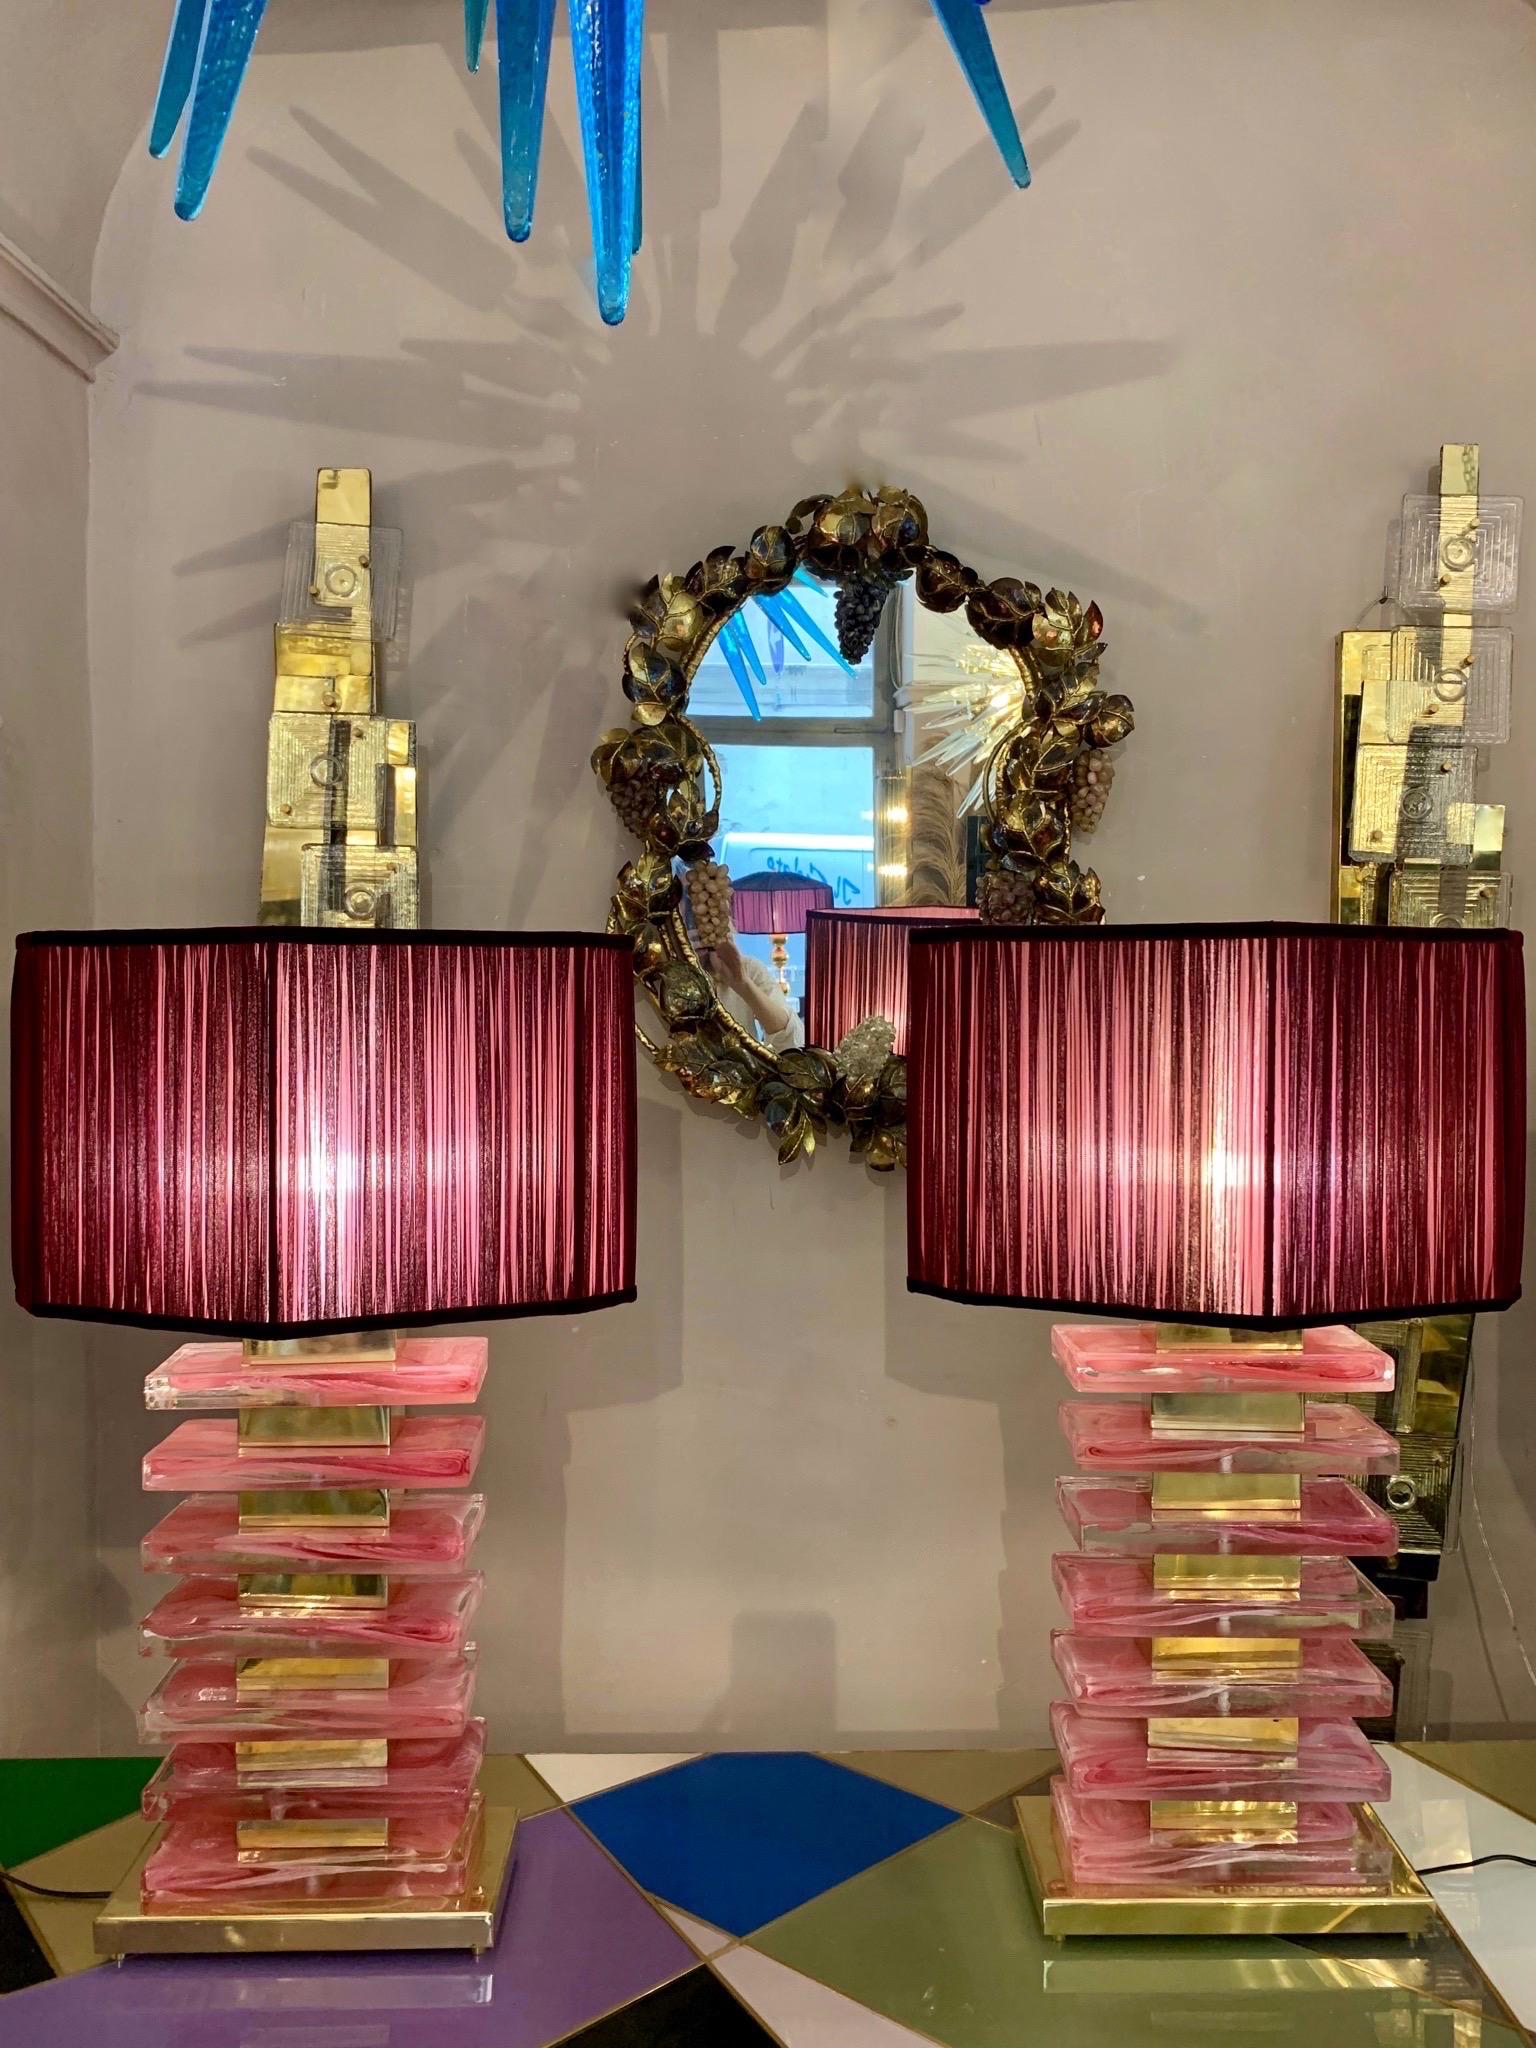 Paire de lampes de table en blocs de verre de Murano de couleur rose avec des raccords en laiton et nos abat-jour.
Les blocs roses en verre de Murano sont soufflés à la main avec du verre de Murano transparent, créant ainsi un effet mixte. Les